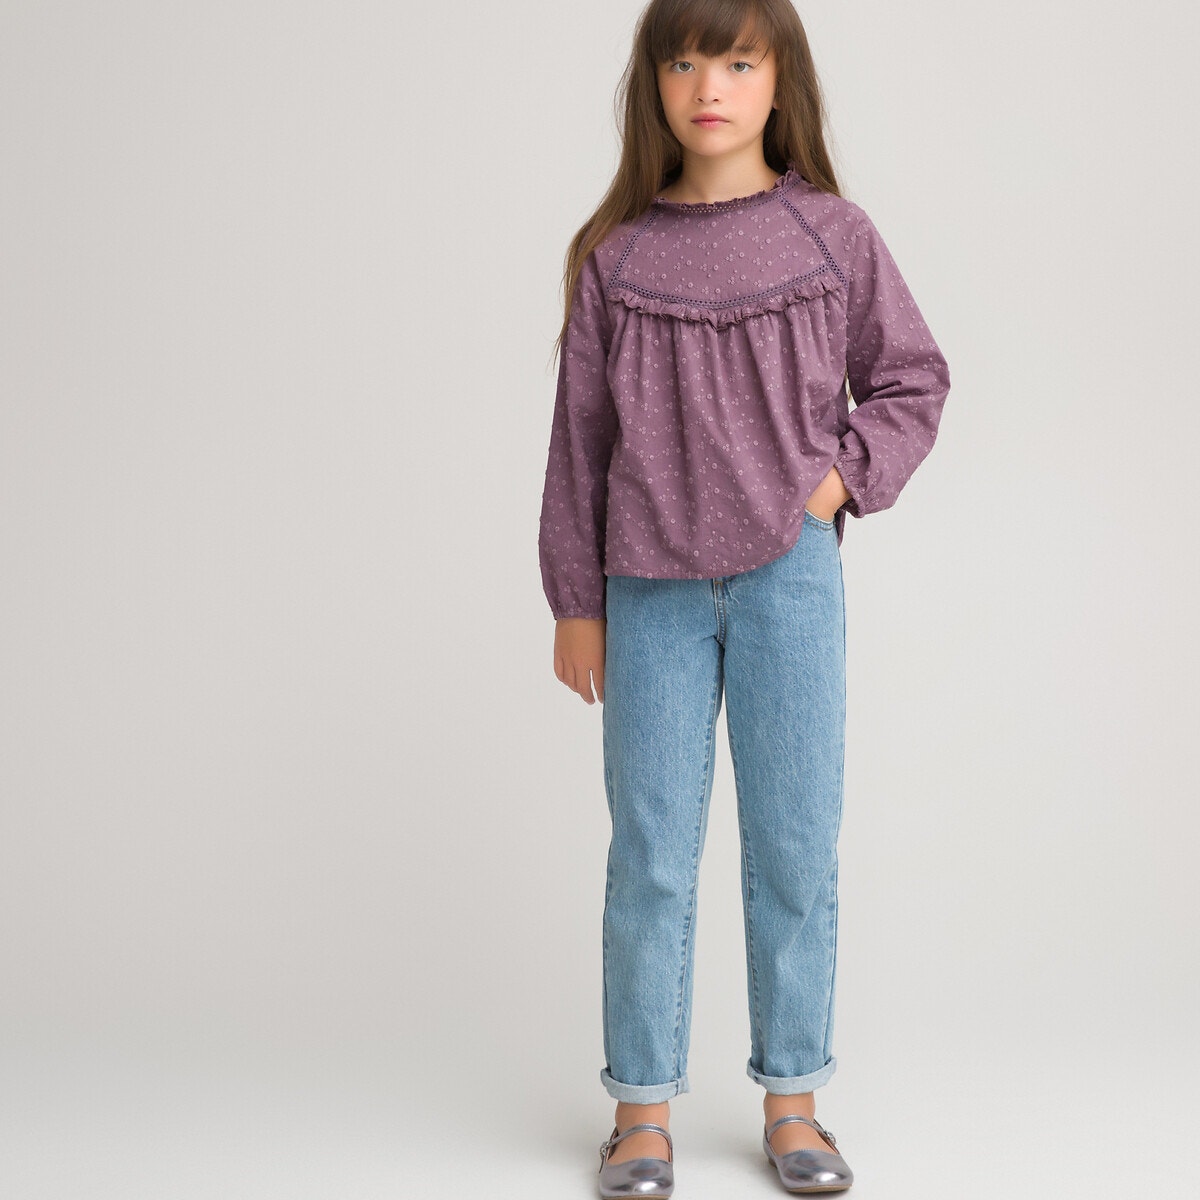 Μακρυμάνικη μπλούζα με κέντημα, 3-12 ετών